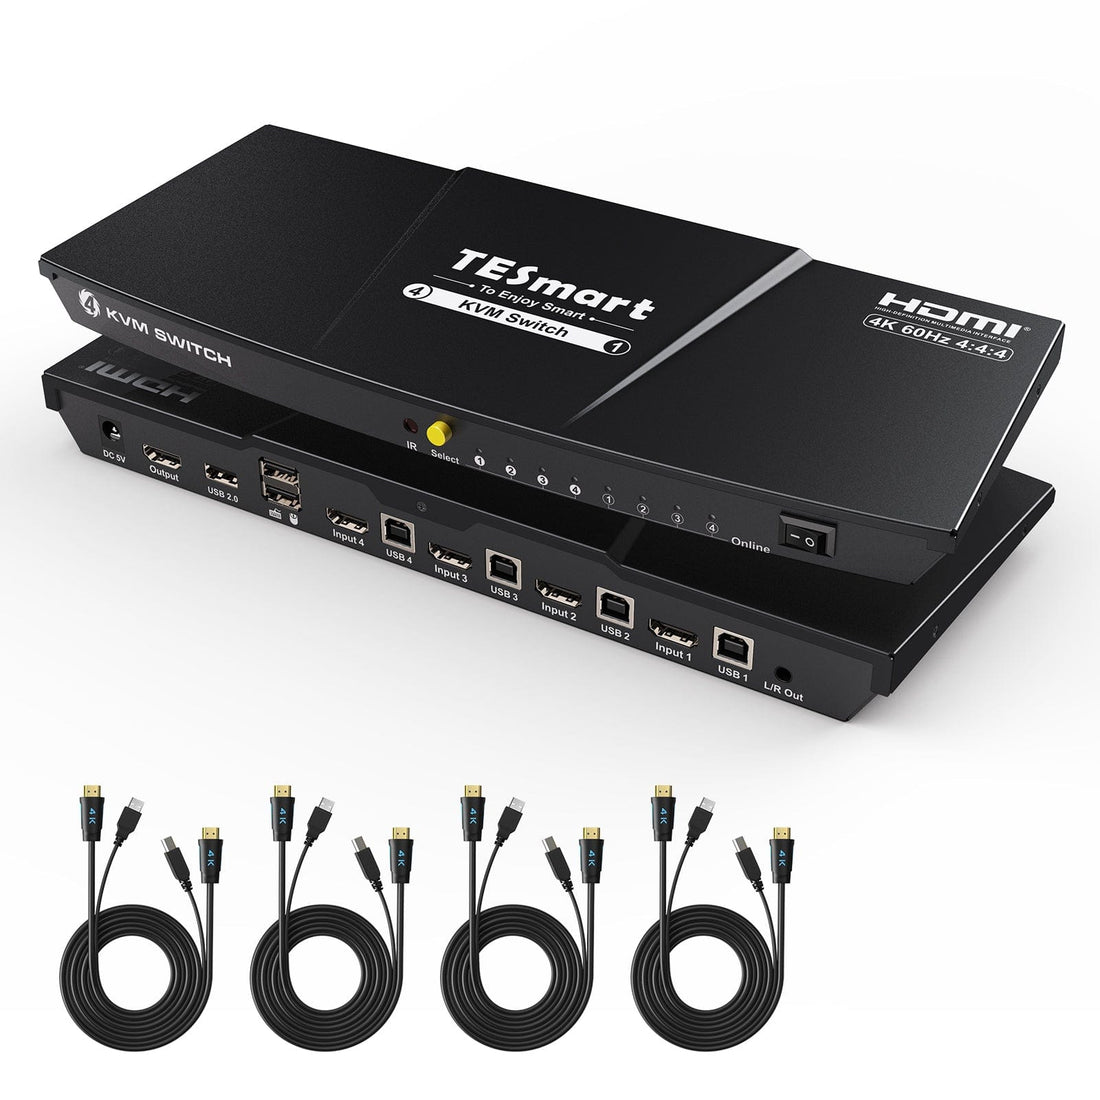 TESmart HKS401-L23-EUBK HDMI KVM Switch 4 Port KVM Switch Kit HDMI 4K30Hz mit EDID, 4 PCs 1 Monitor EU Plug